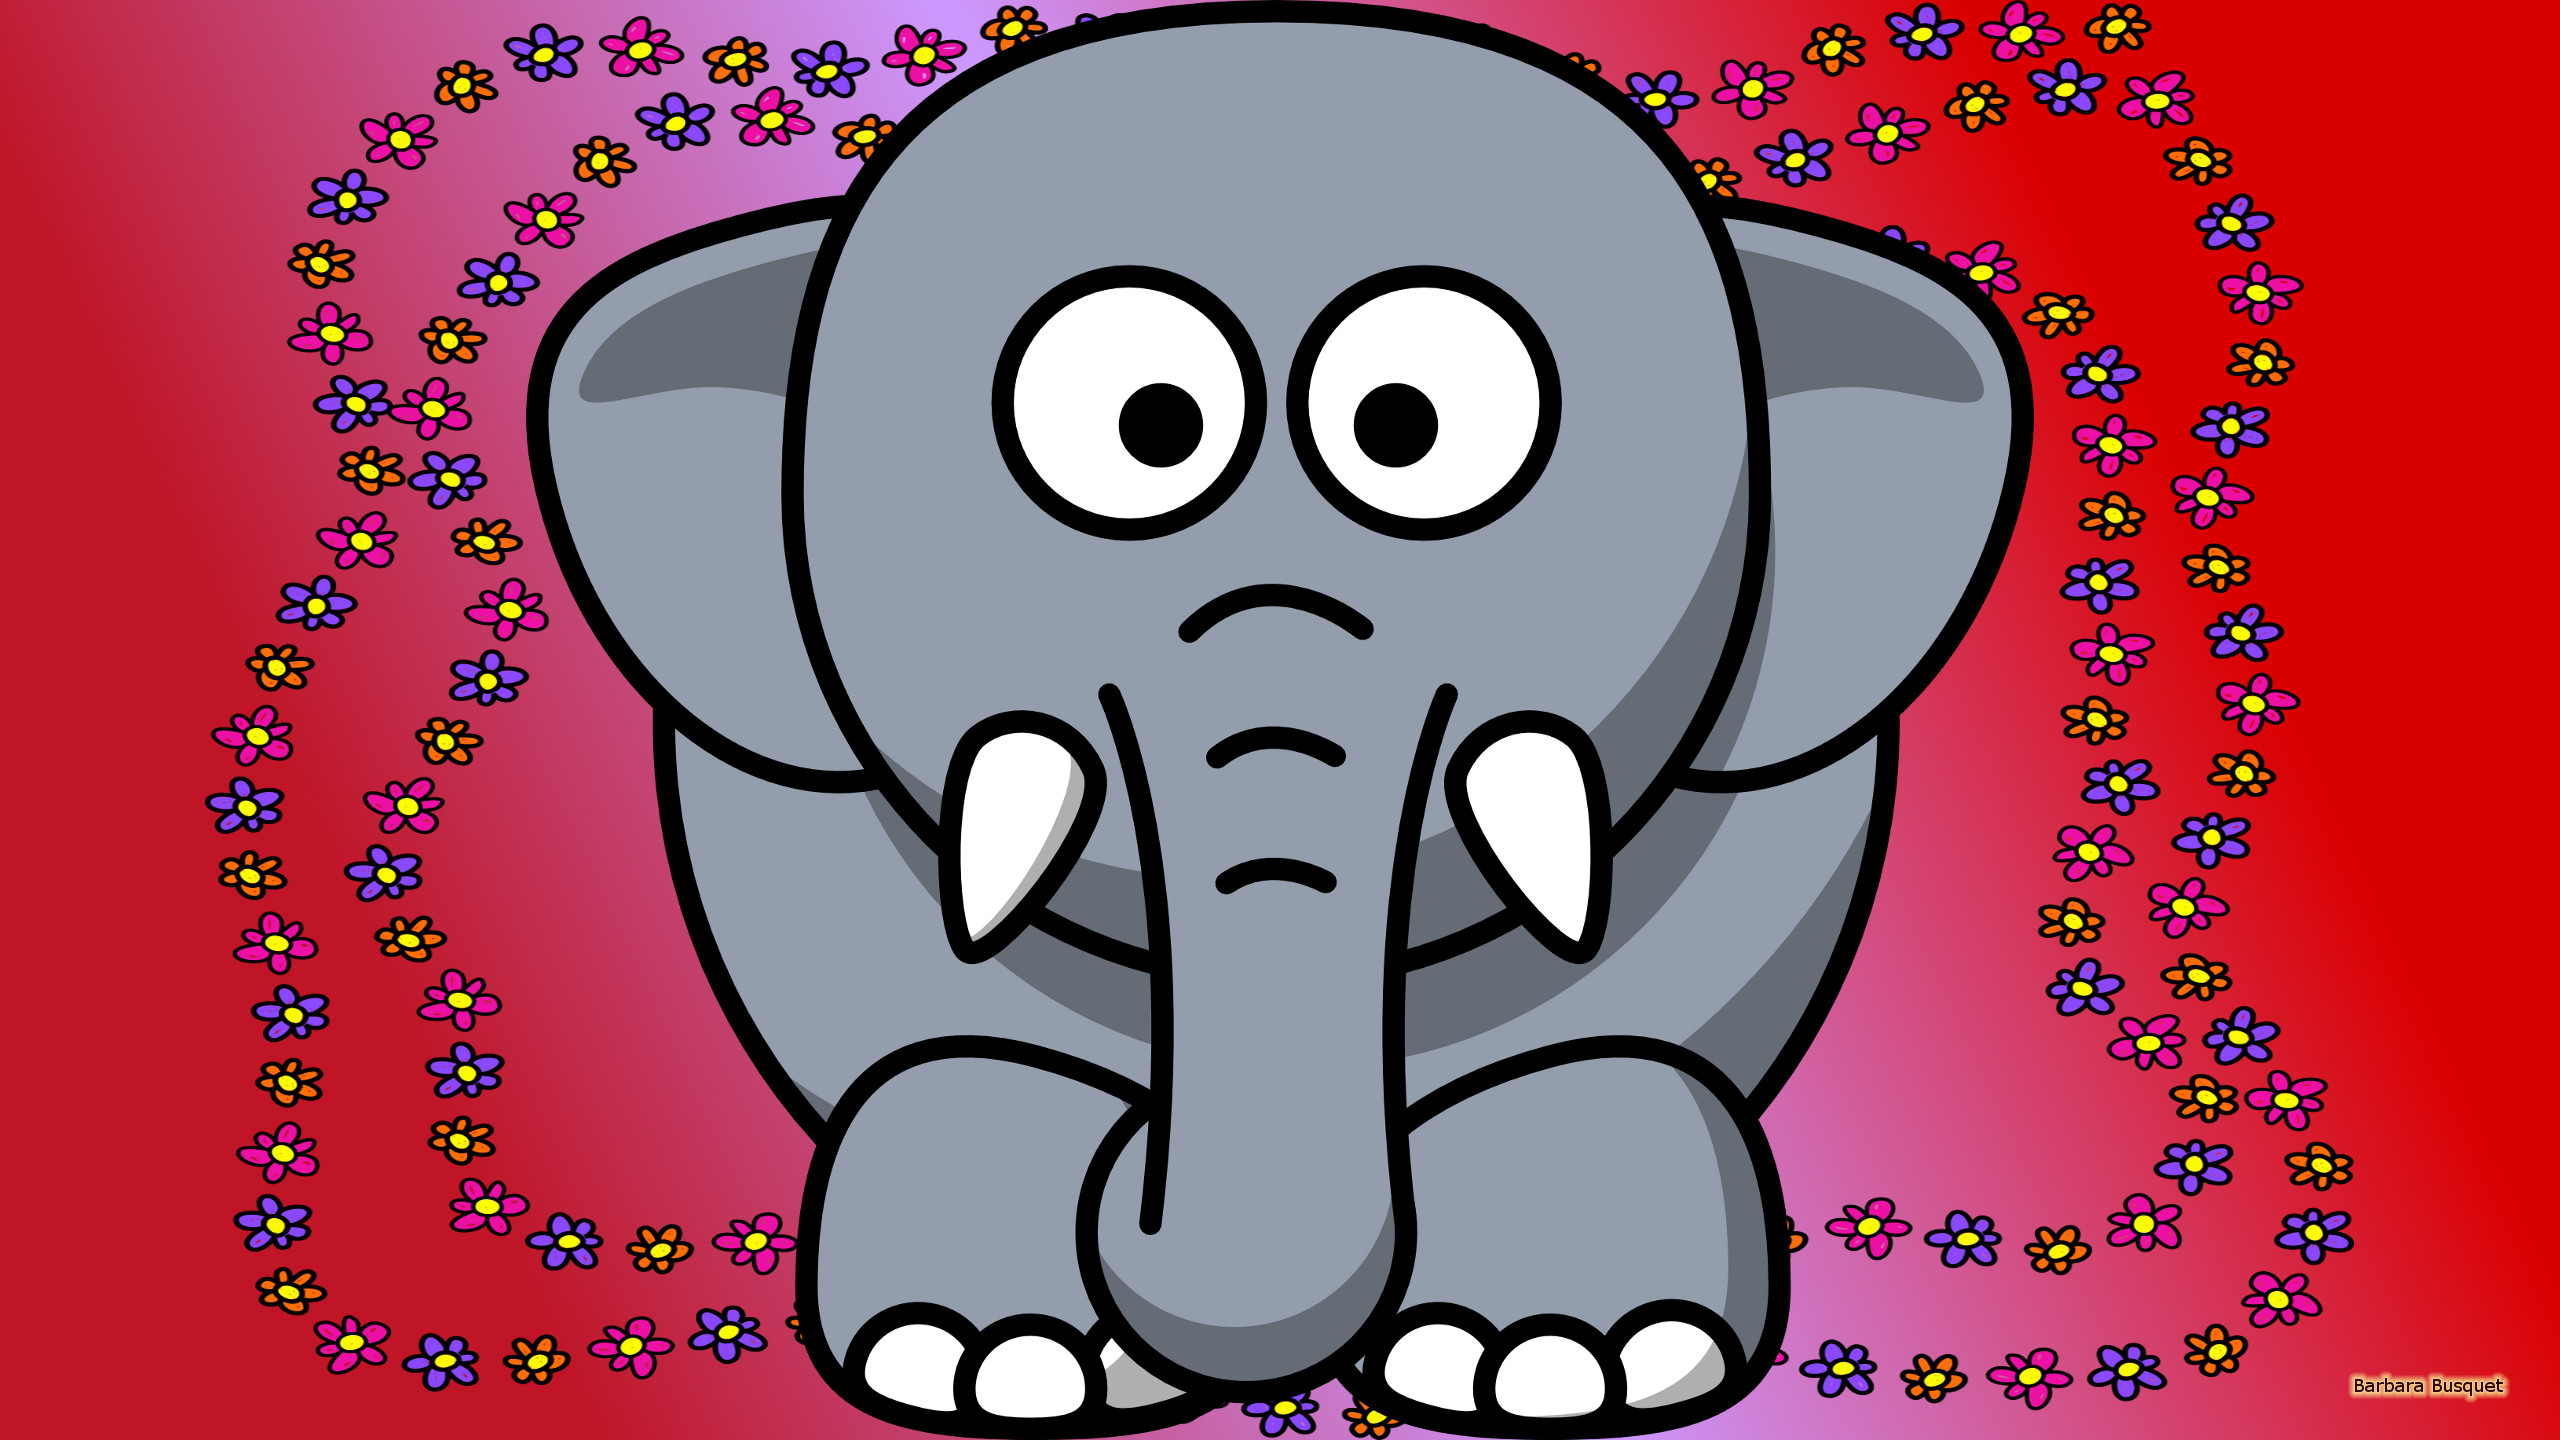 Elephant Wallpaper Elephant Elephants And Mammoths Indian Elephant Cartoon Snout 52983